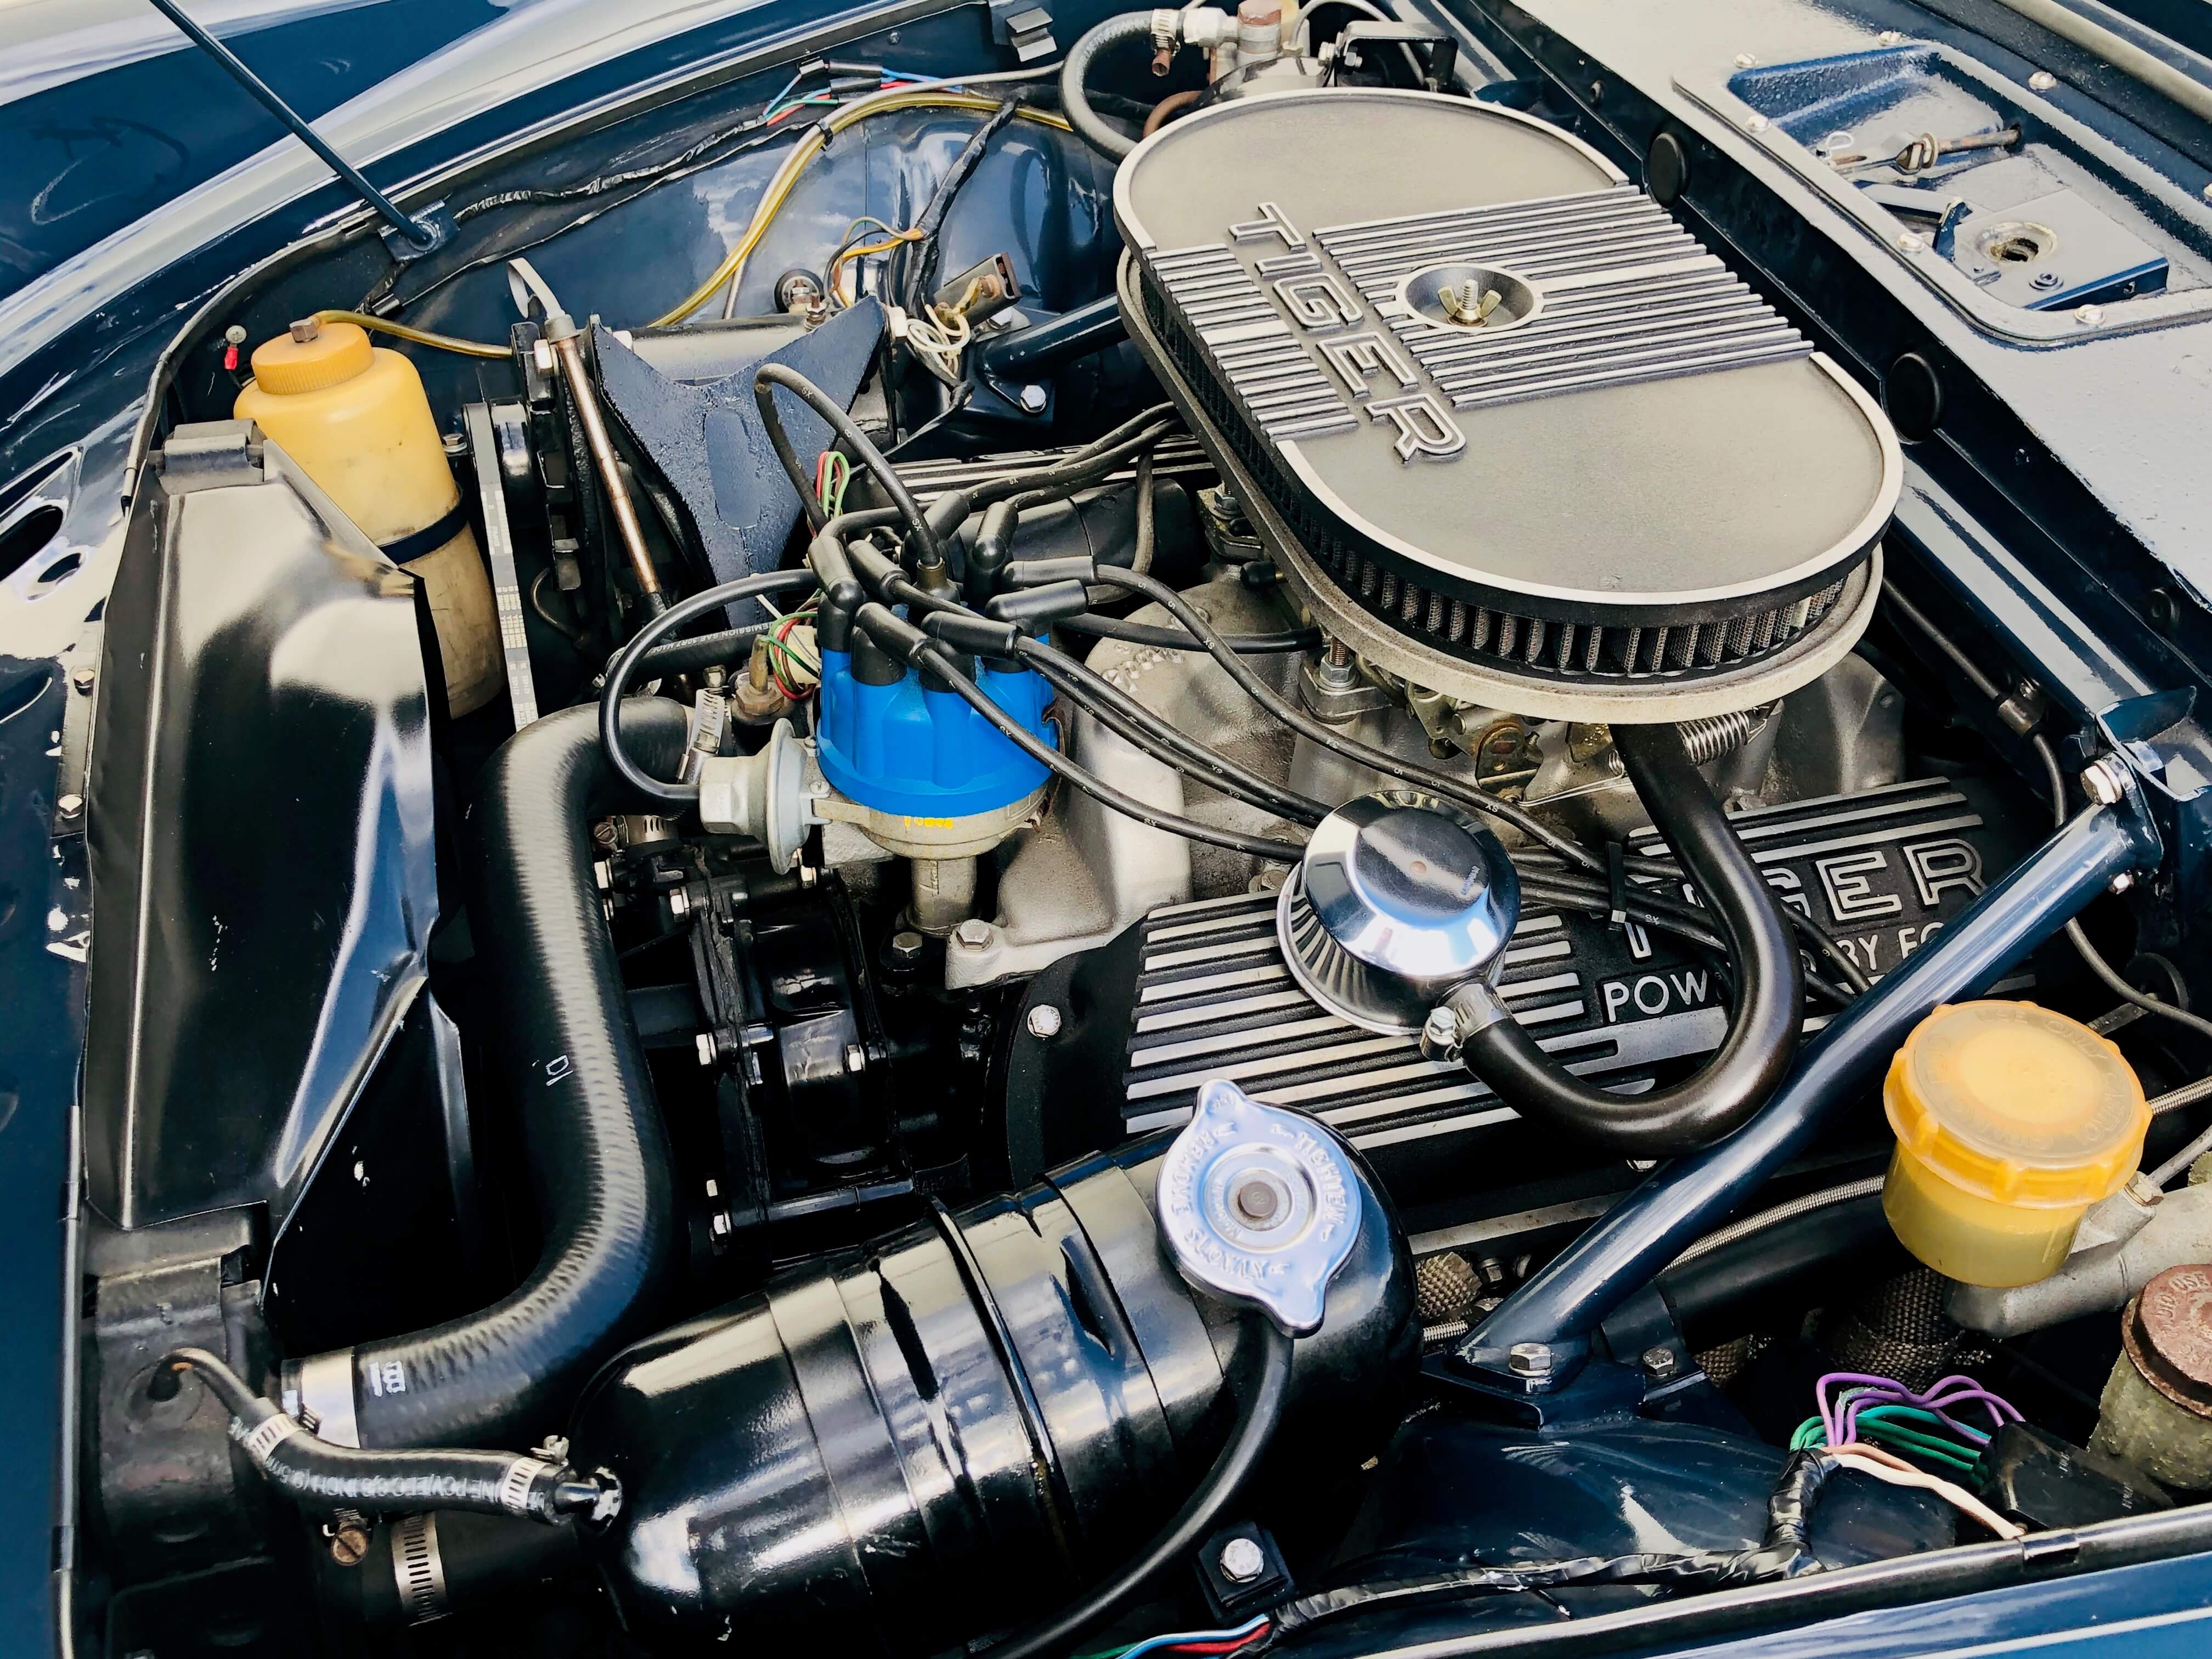 1965 Sunbeam Tiger engine